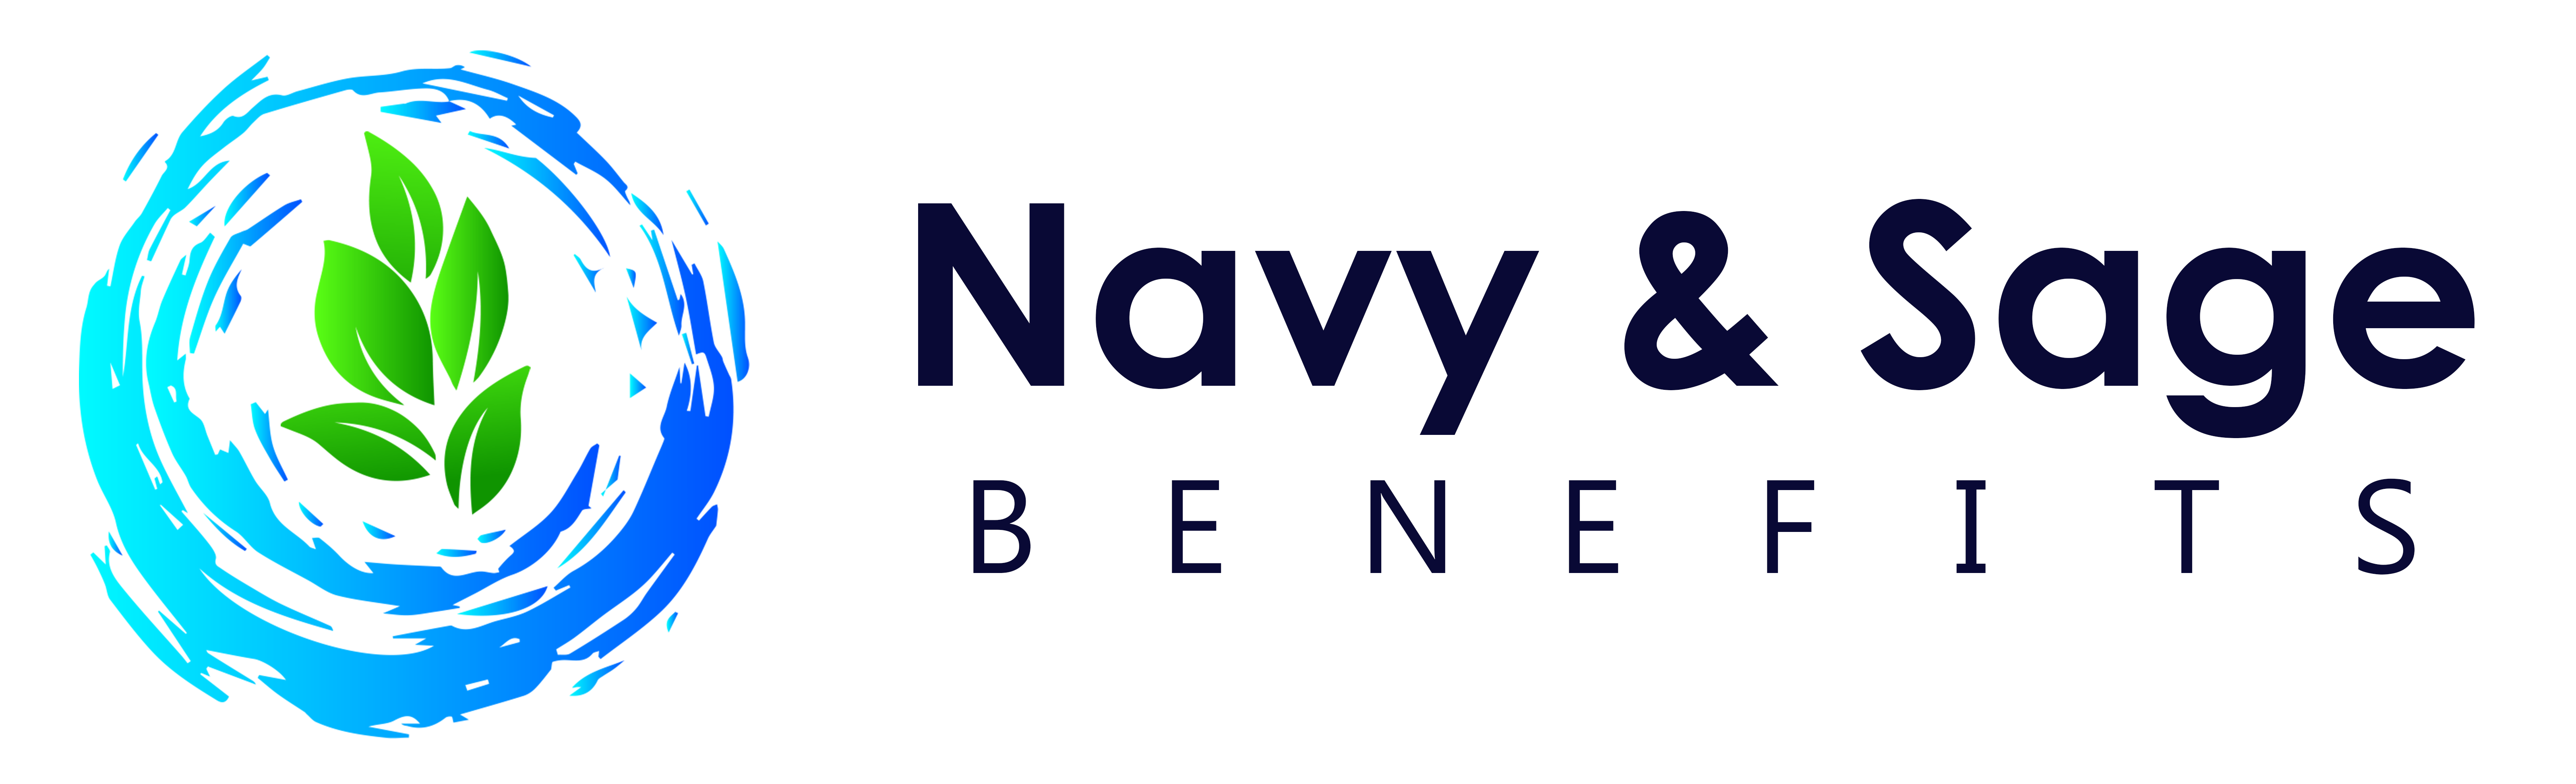 Navy & Sage